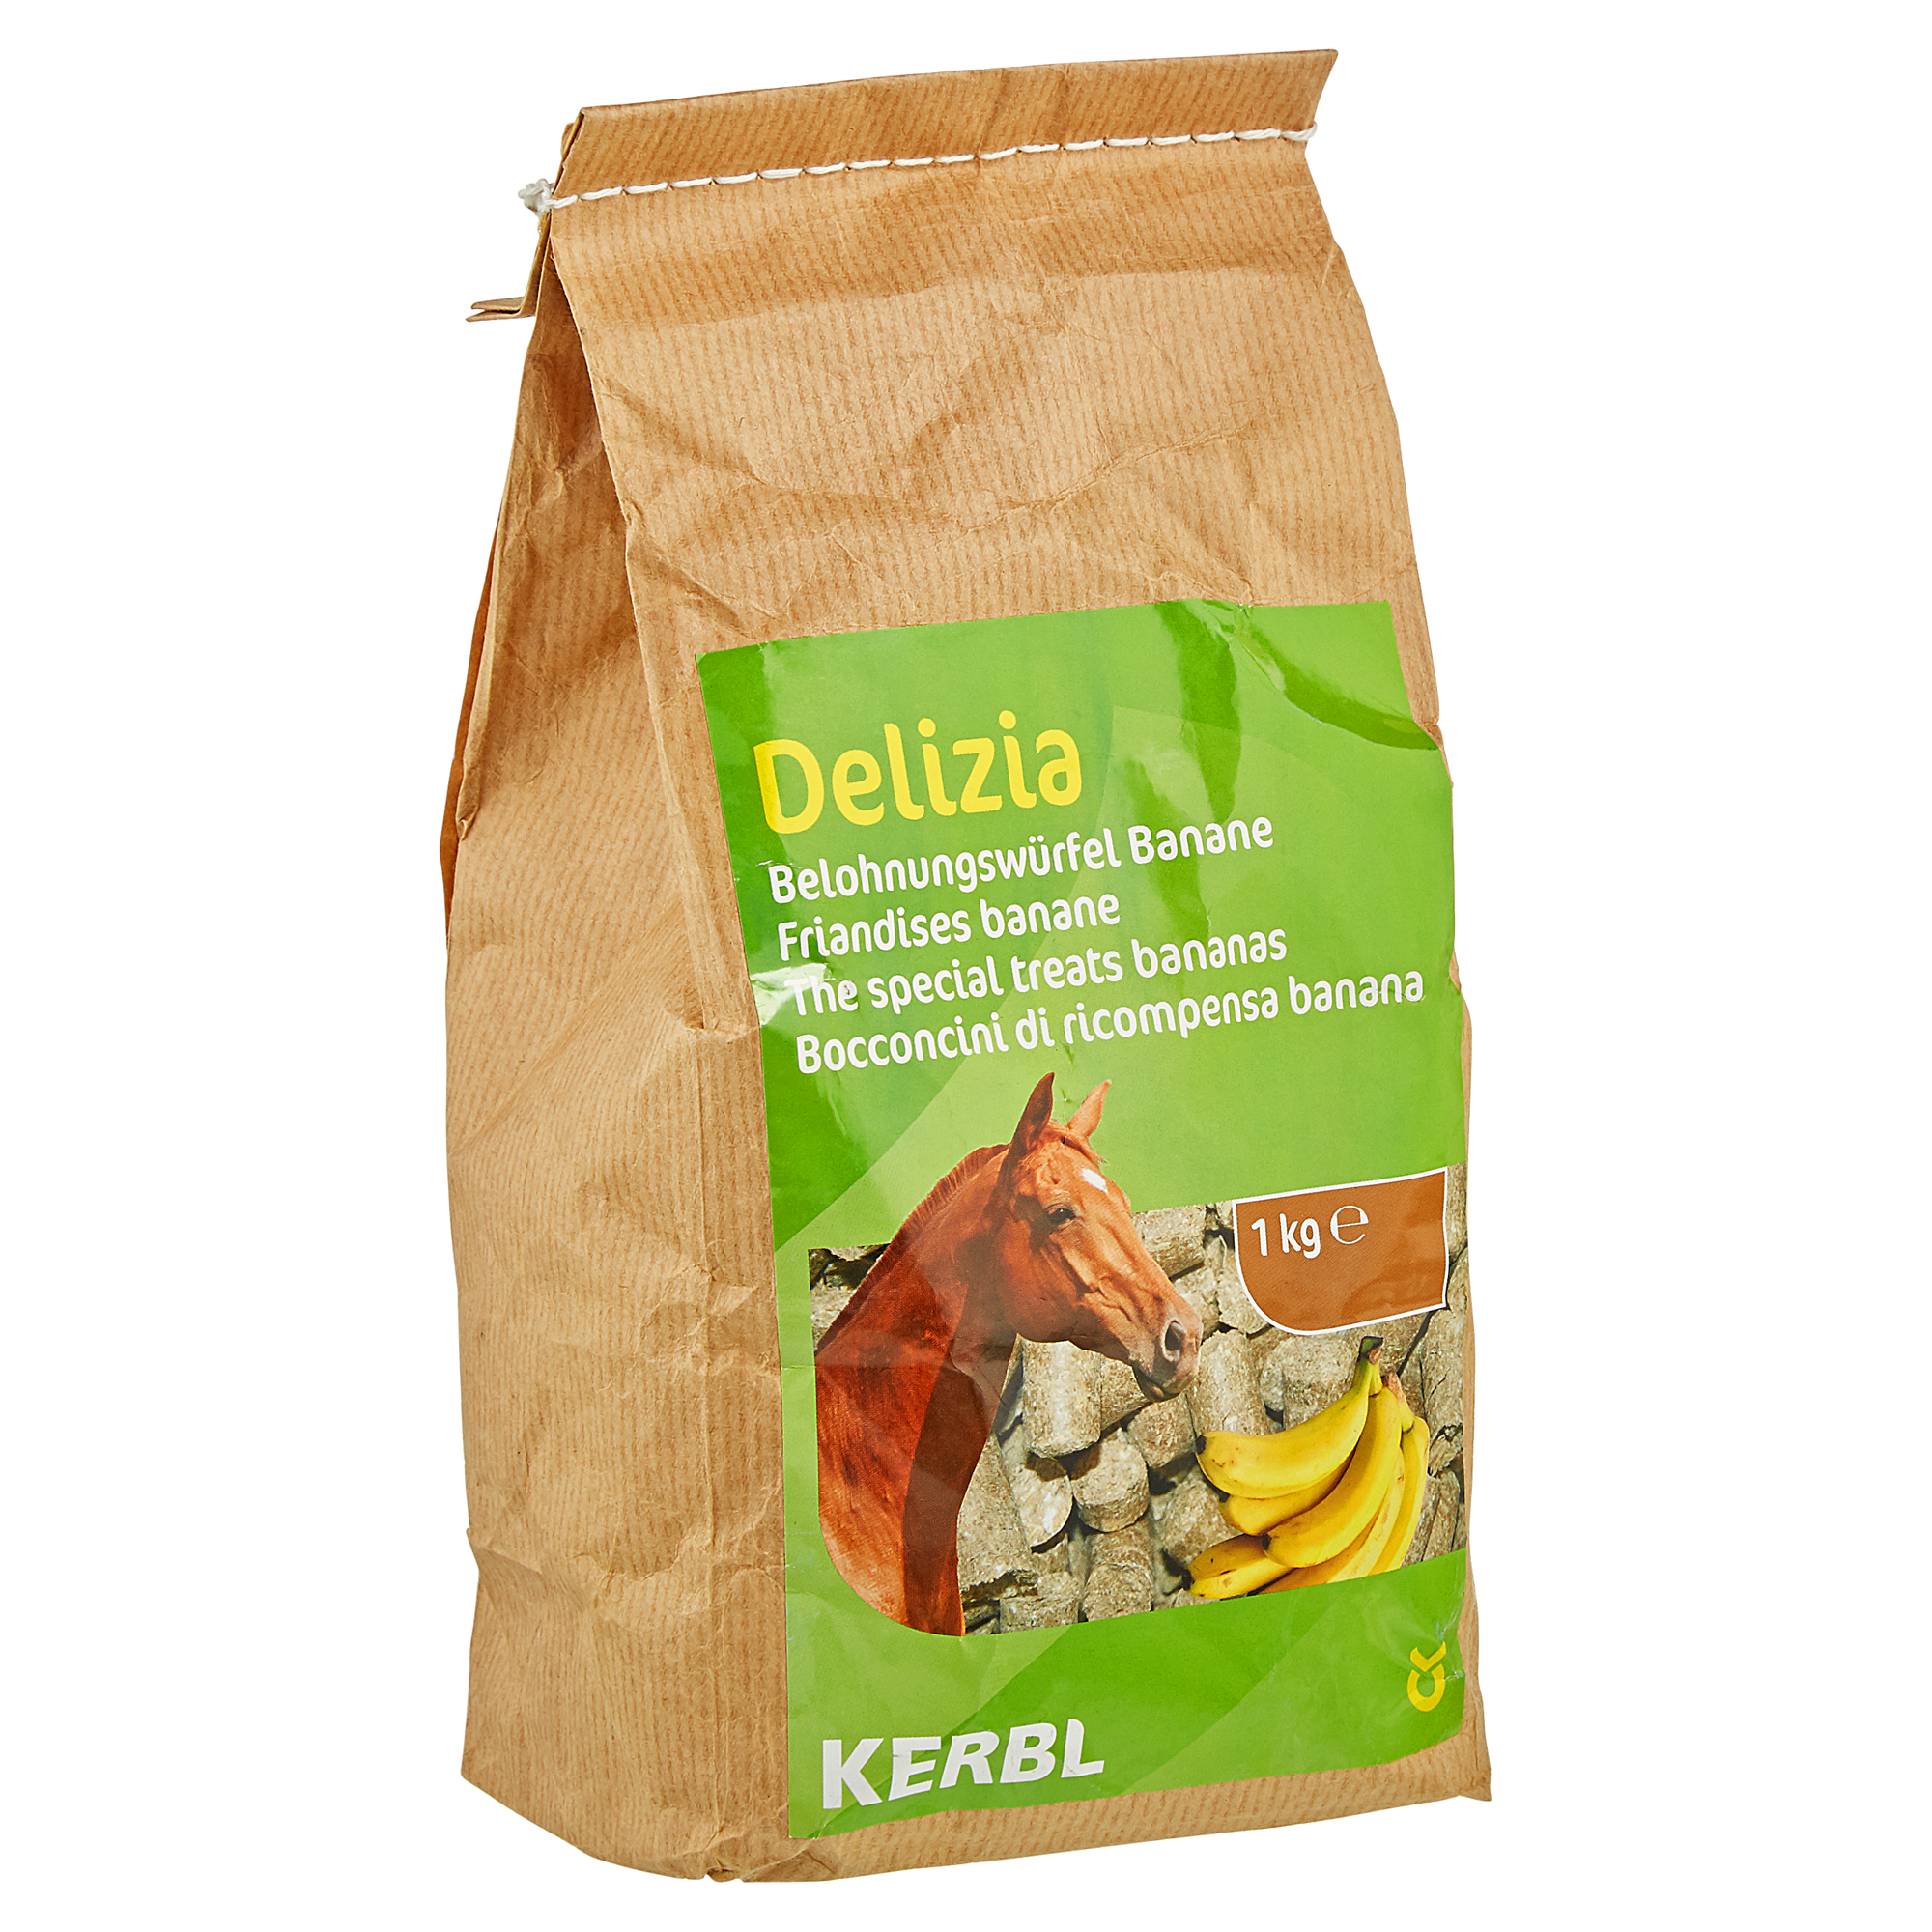 Belohnungswürfel "Delizia" Banane 1 kg + product picture